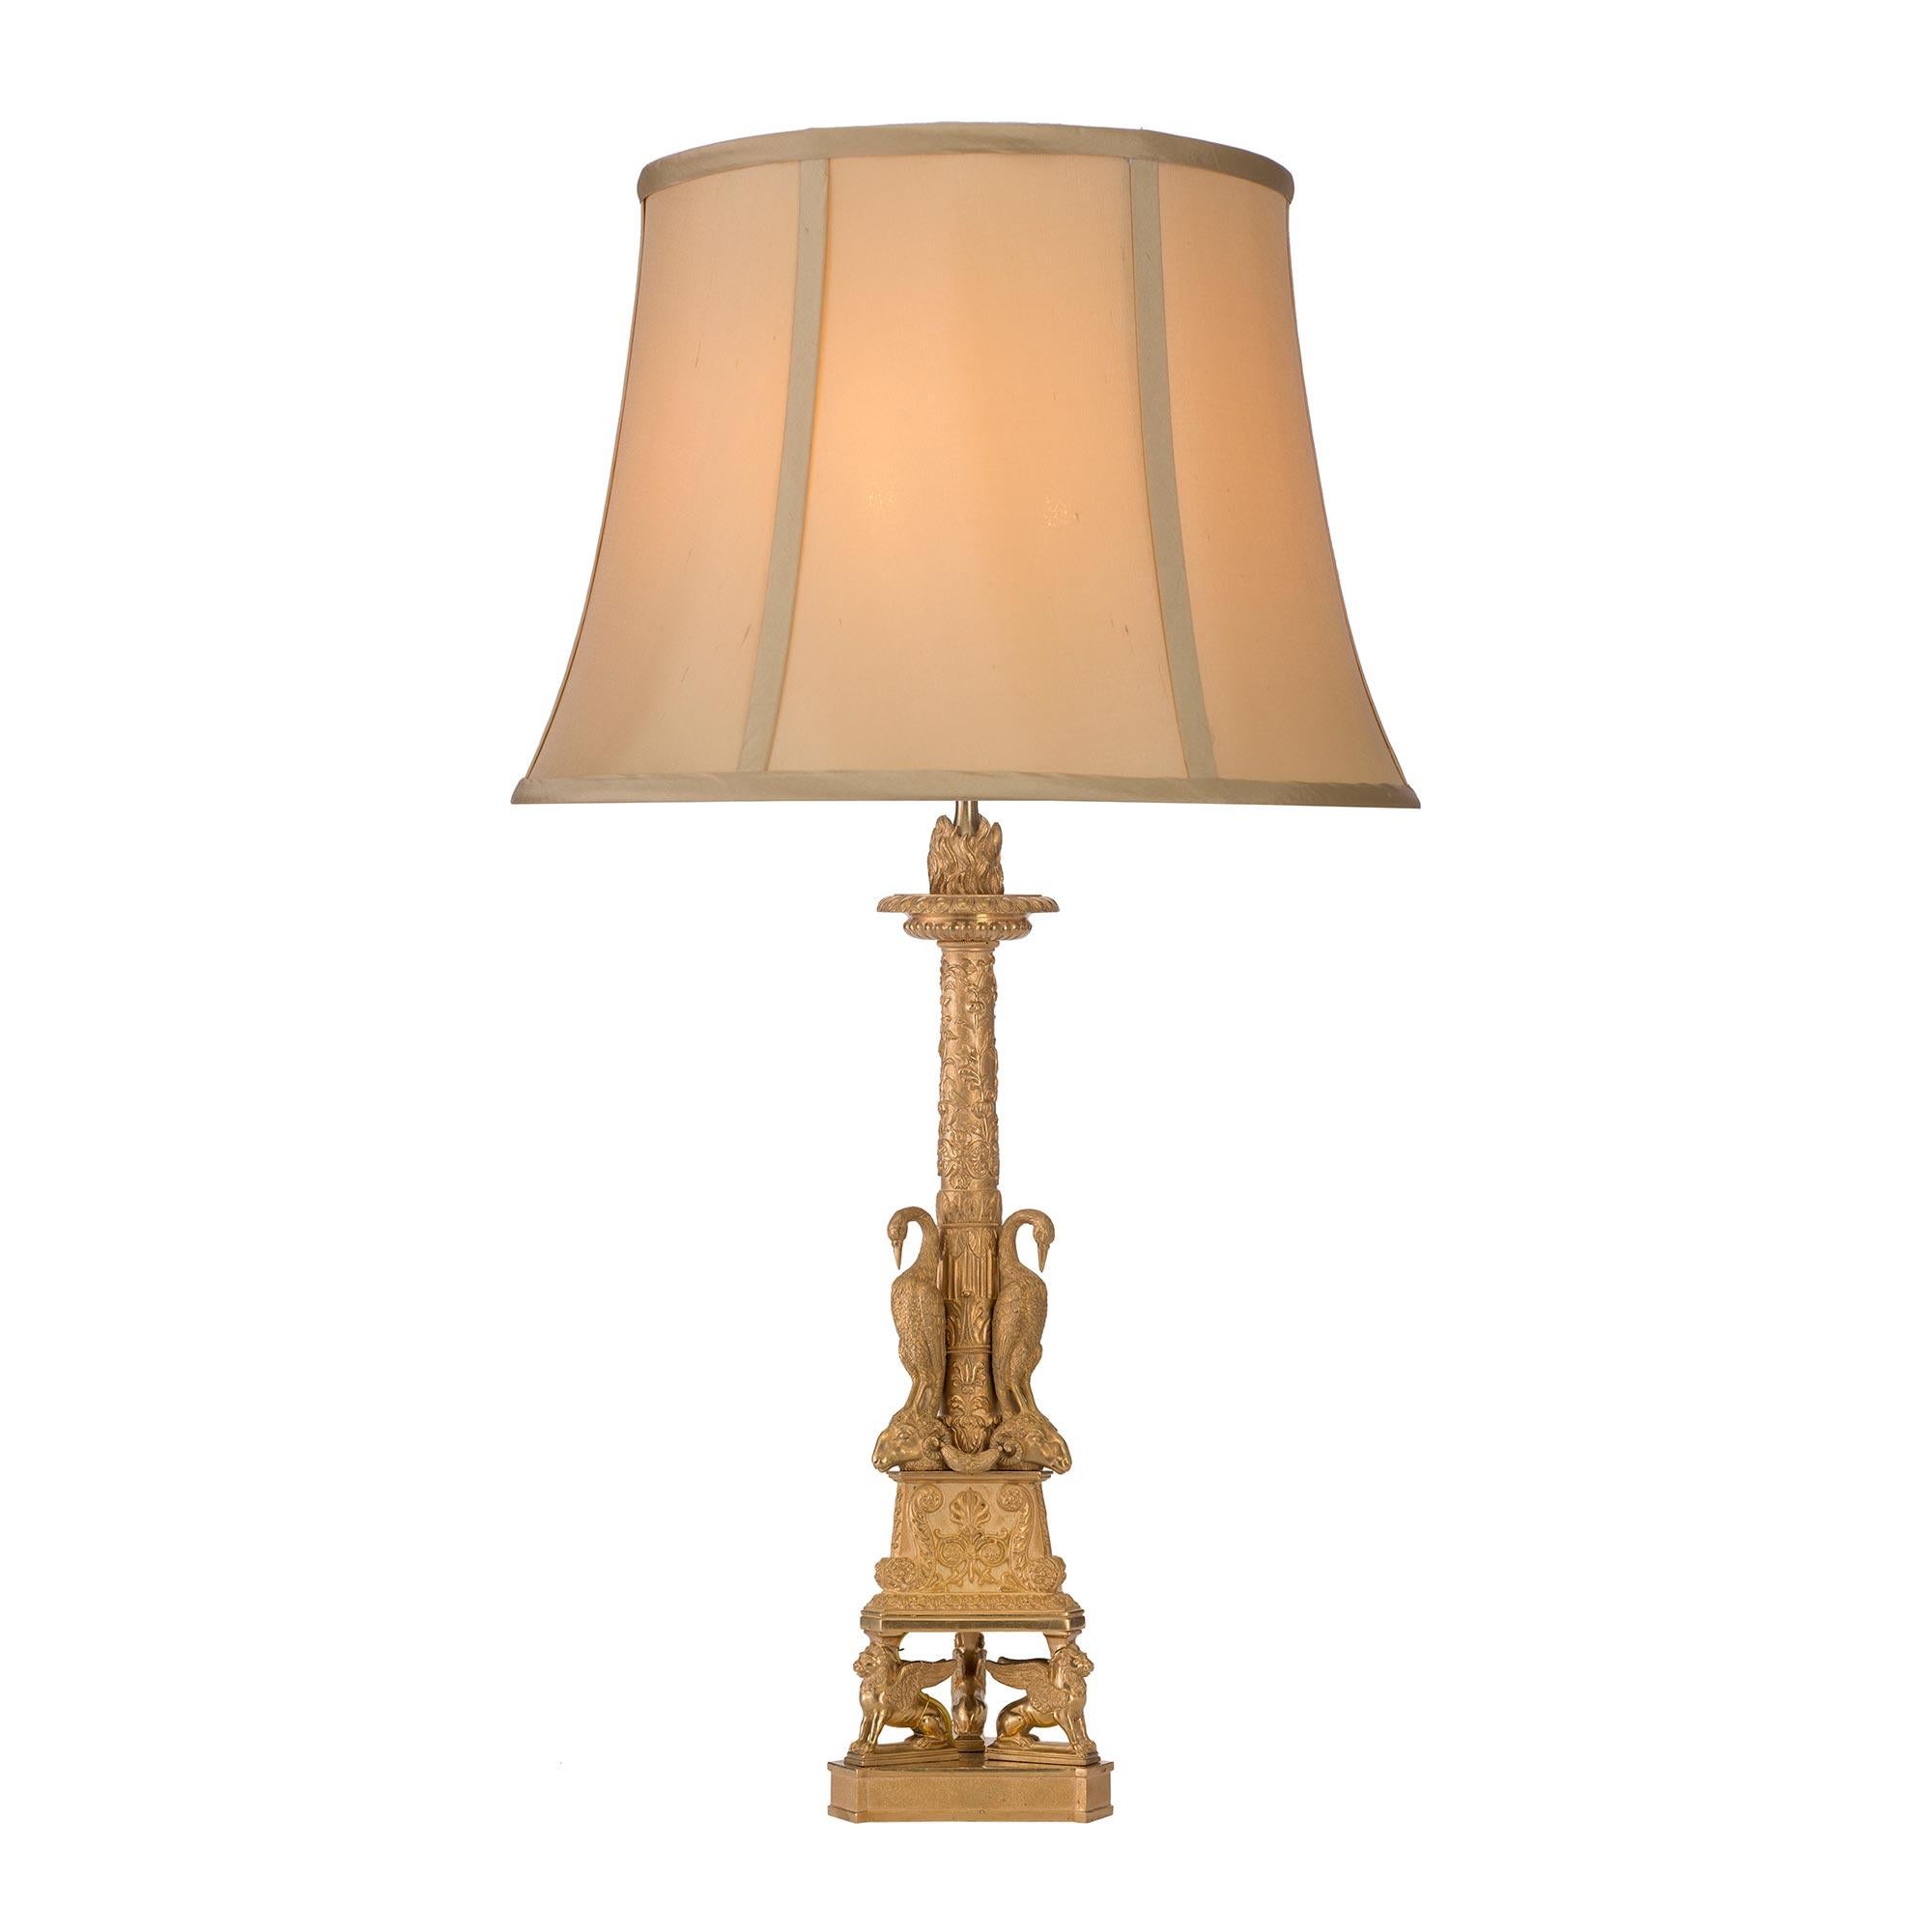 Ein Paar einzigartige und sehr dekorative französische Ormolu-Lampen aus dem 19. Jahrhundert im Stil Louis XVI. Jede Lampe steht auf einer dreieckigen Stütze, die mit geflügelten Löwen verziert ist. Darüber befindet sich ein Sockel, der mit